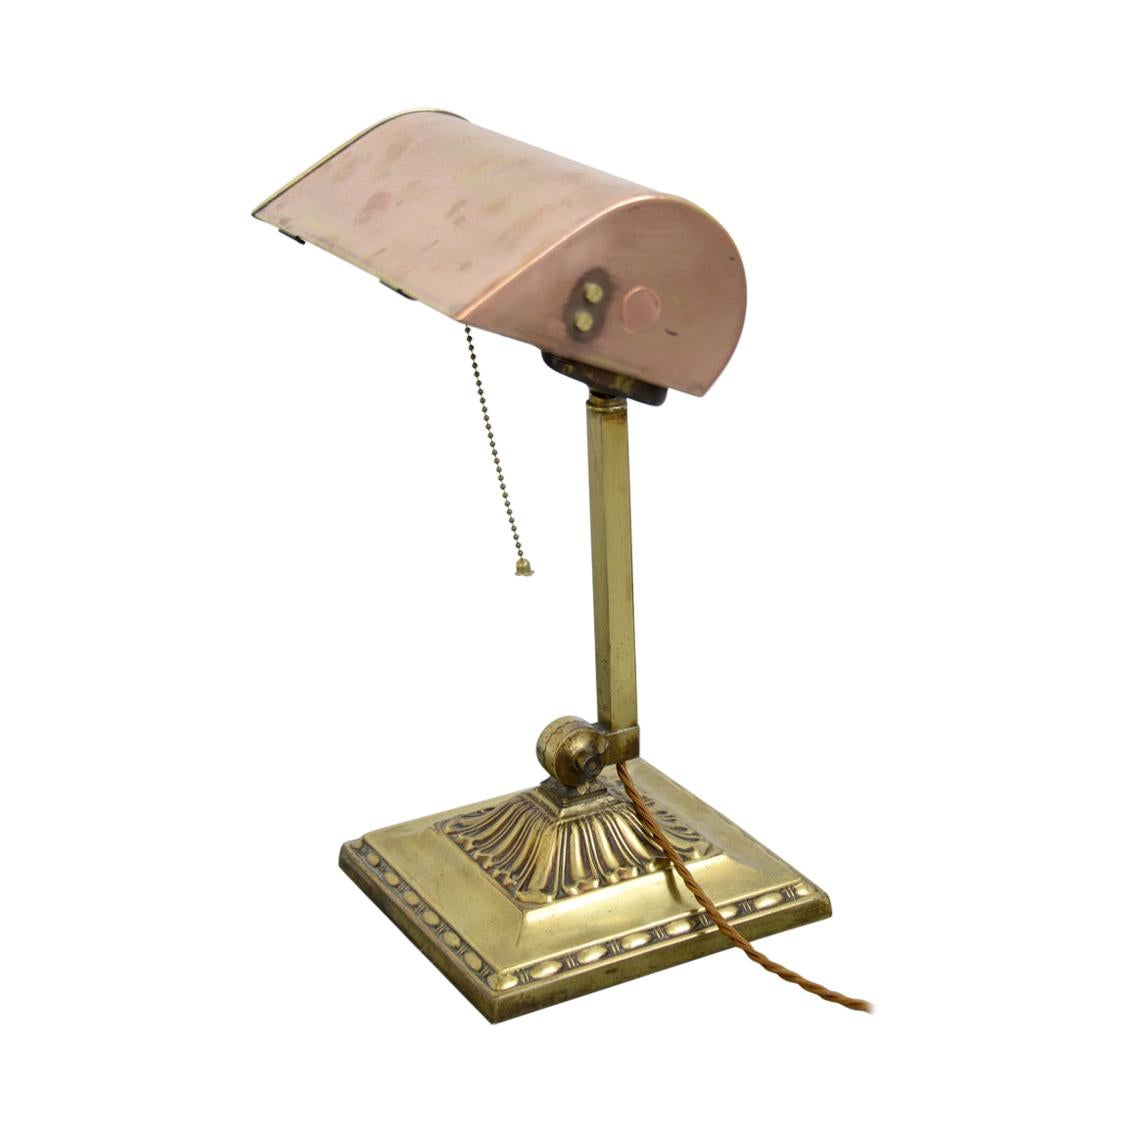 Emeralite NY Desk Lamp, circa 1910